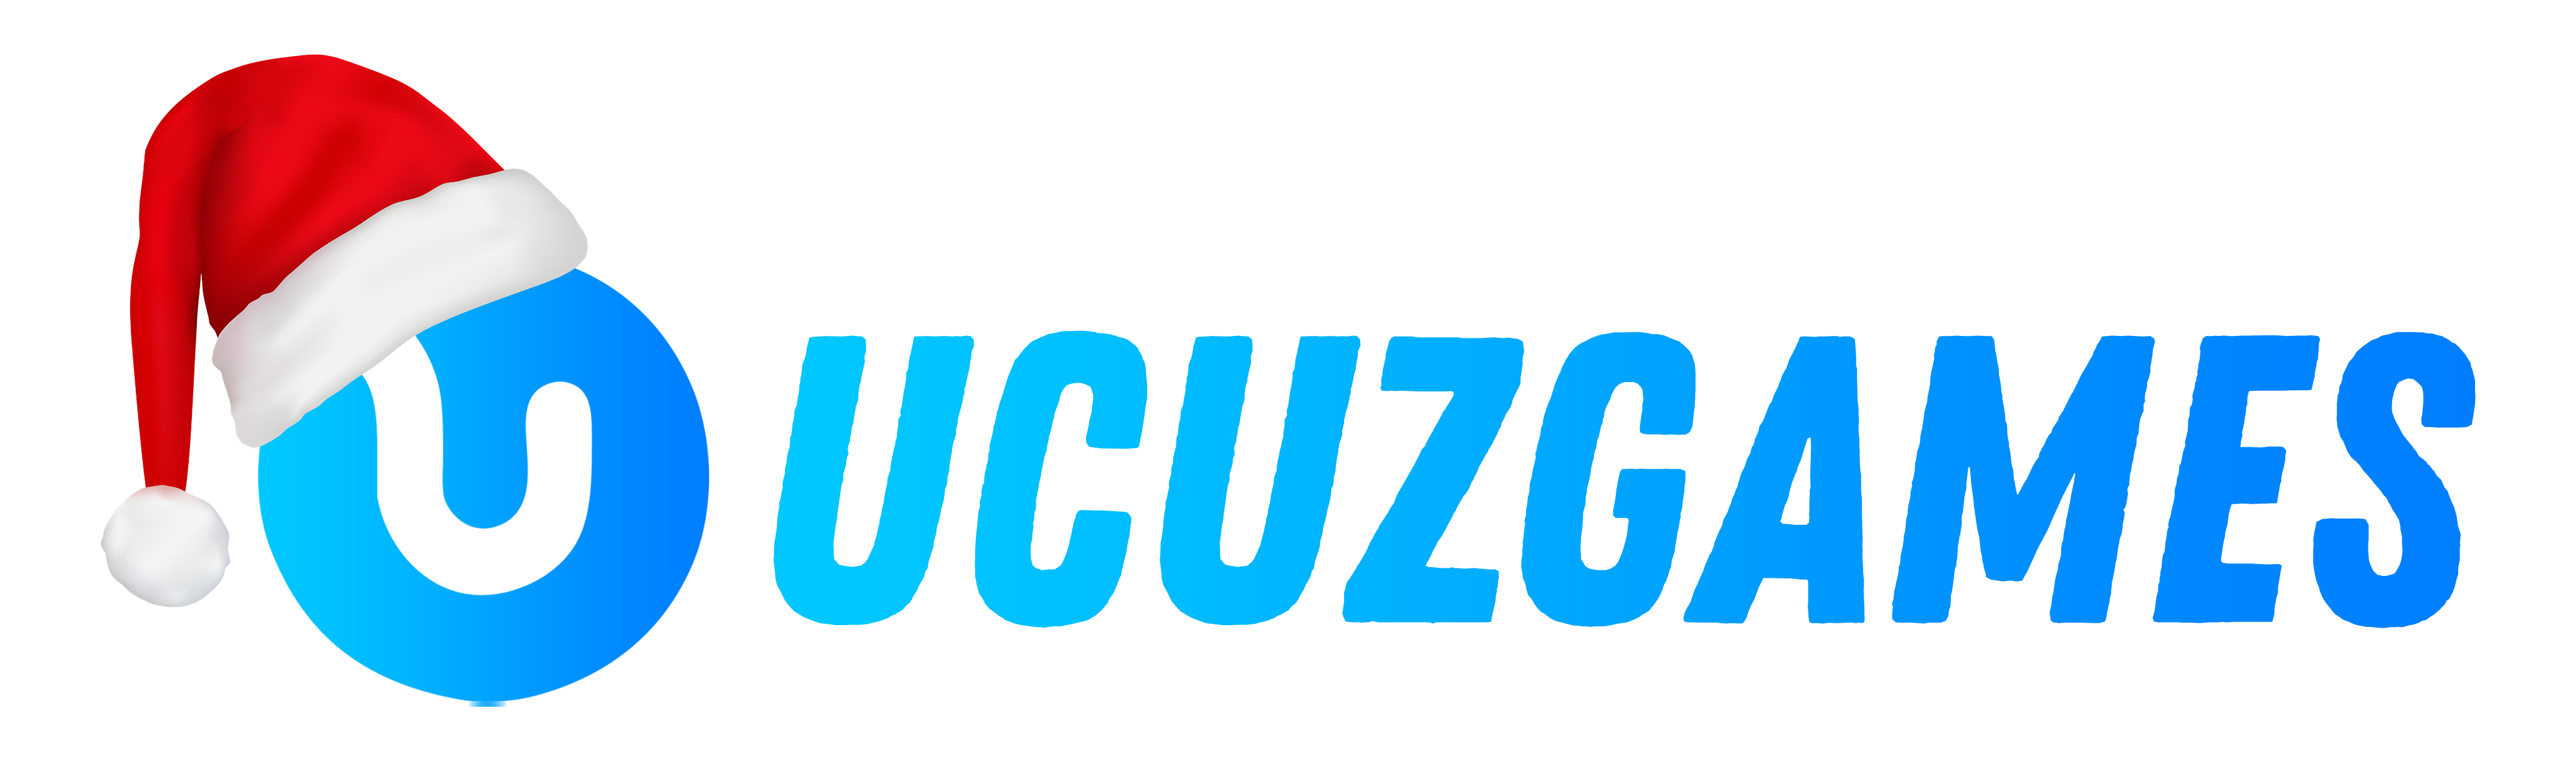 UcuzGames - Ucuz Oyun Mağazası